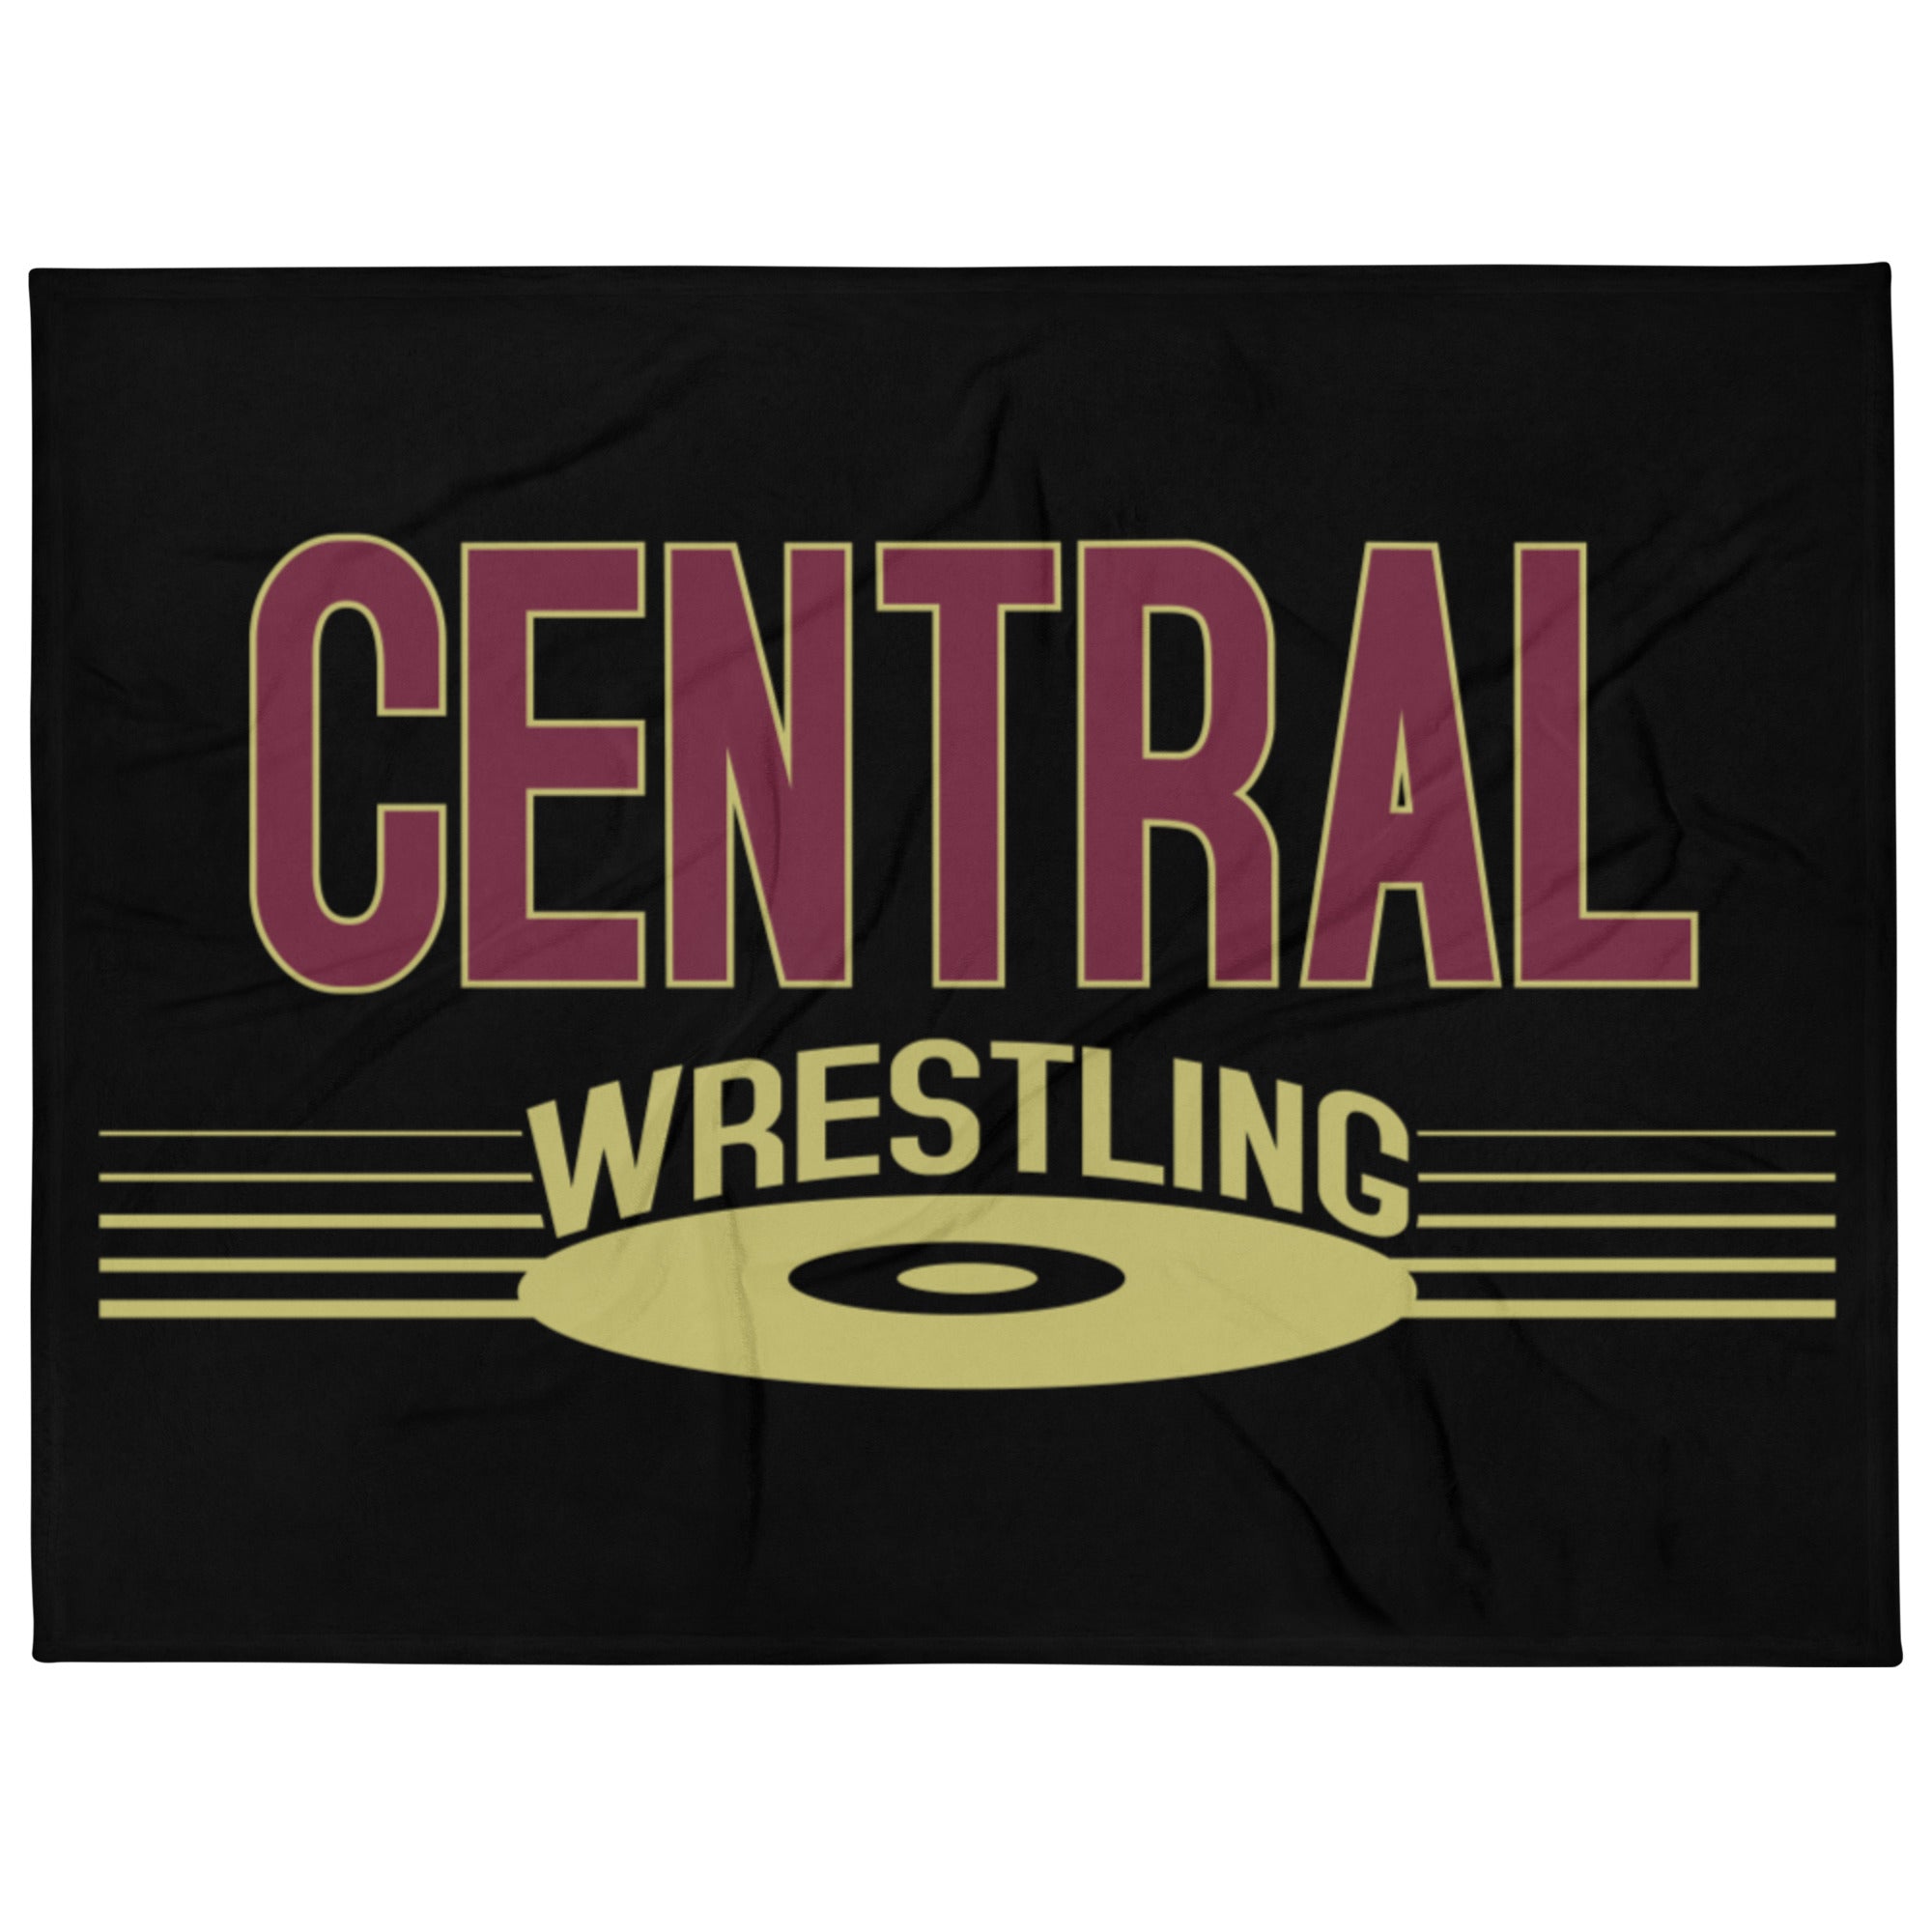 Keller Central Wrestling Black Throw Blanket 60 x 80